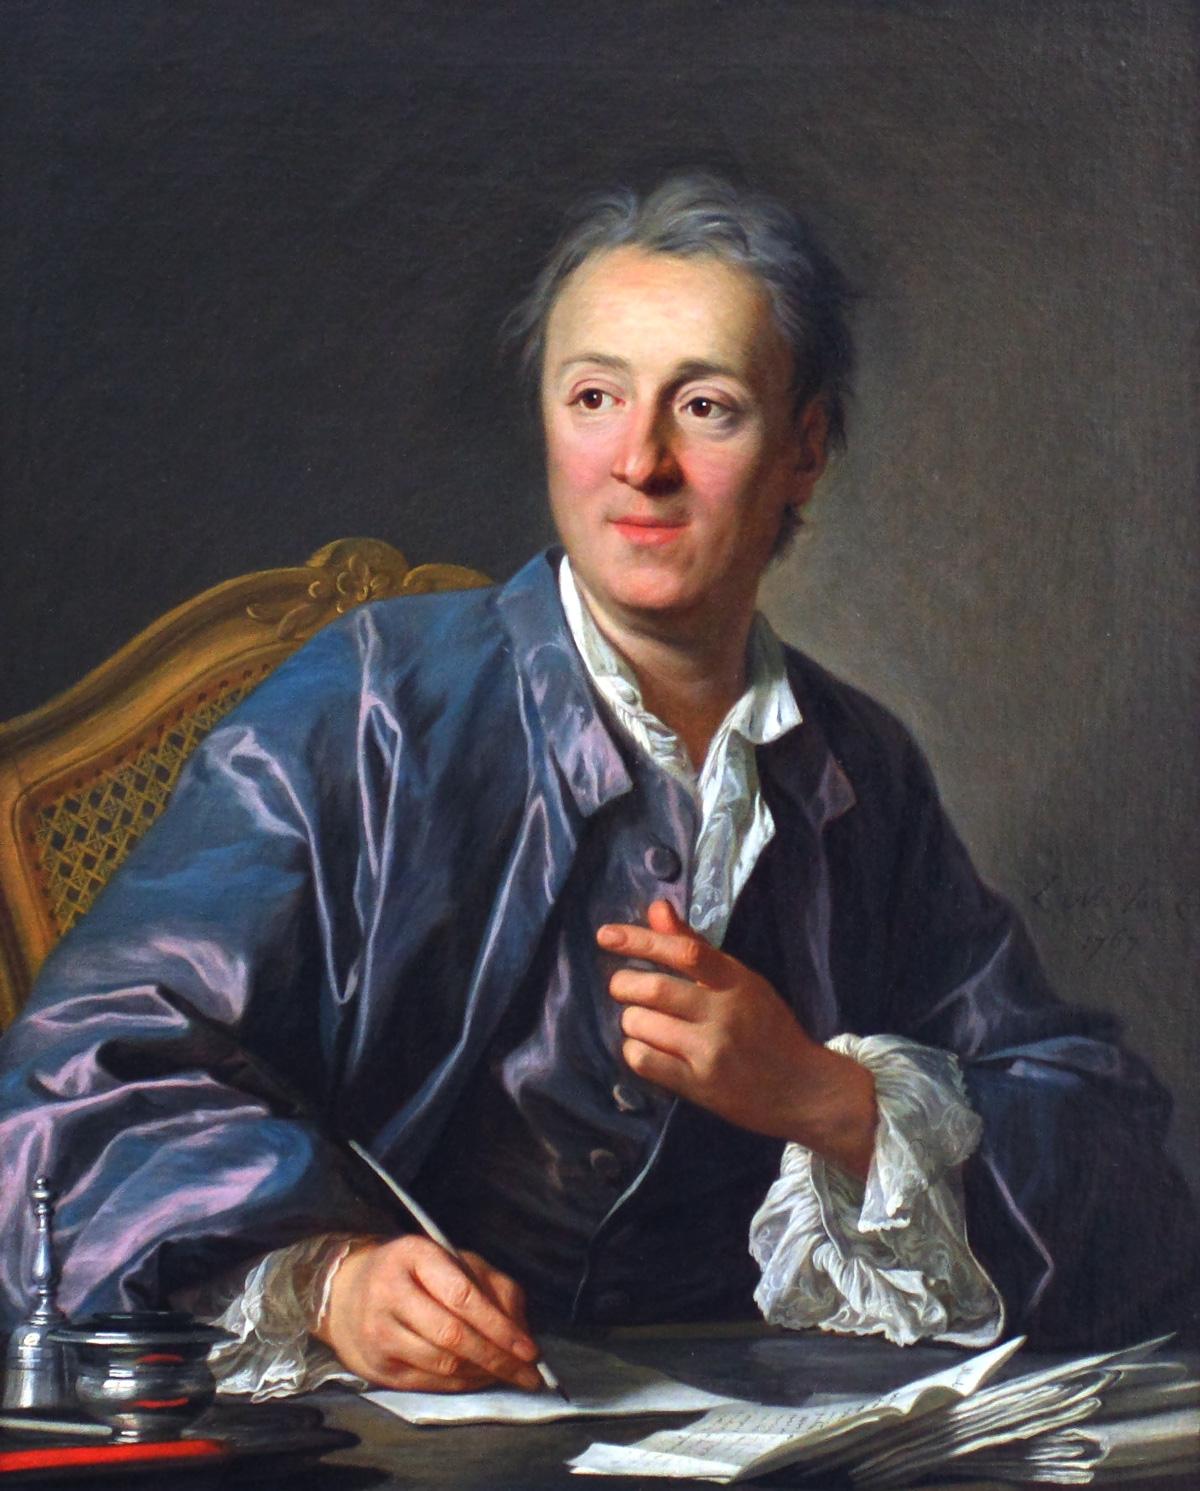 3010 Denis Diderot 111 - Linker Kopf der Aufklärung - Aufklärung, Denis Diderot, Freiheit, Materialist, Philosophie, Todestag - Theorie & Geschichte